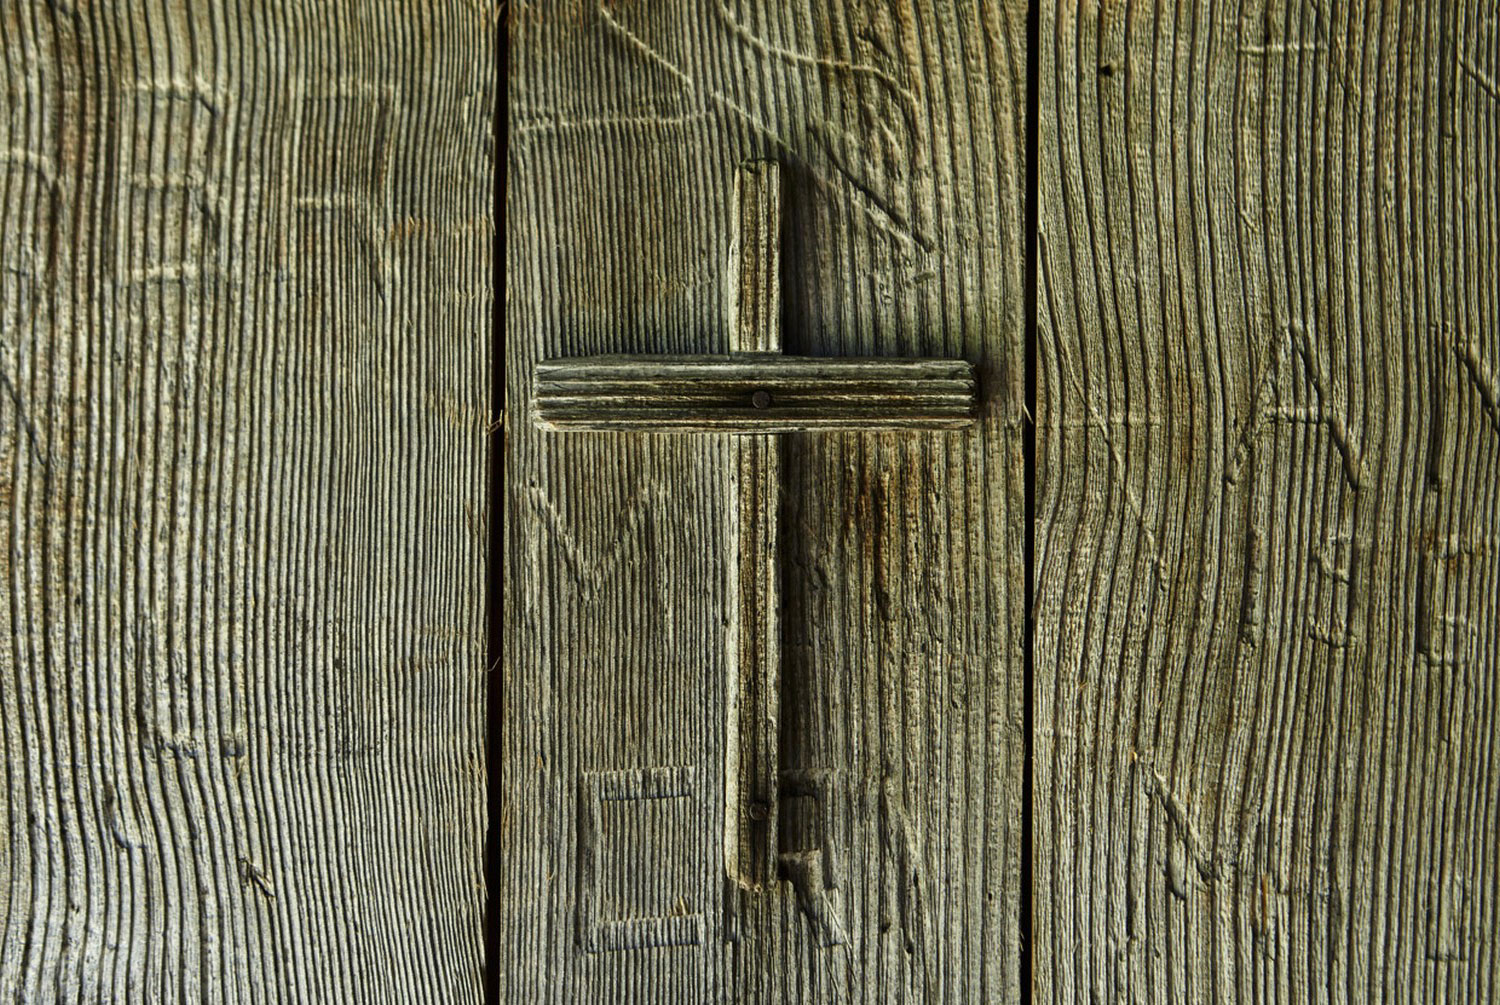 деревянный крест